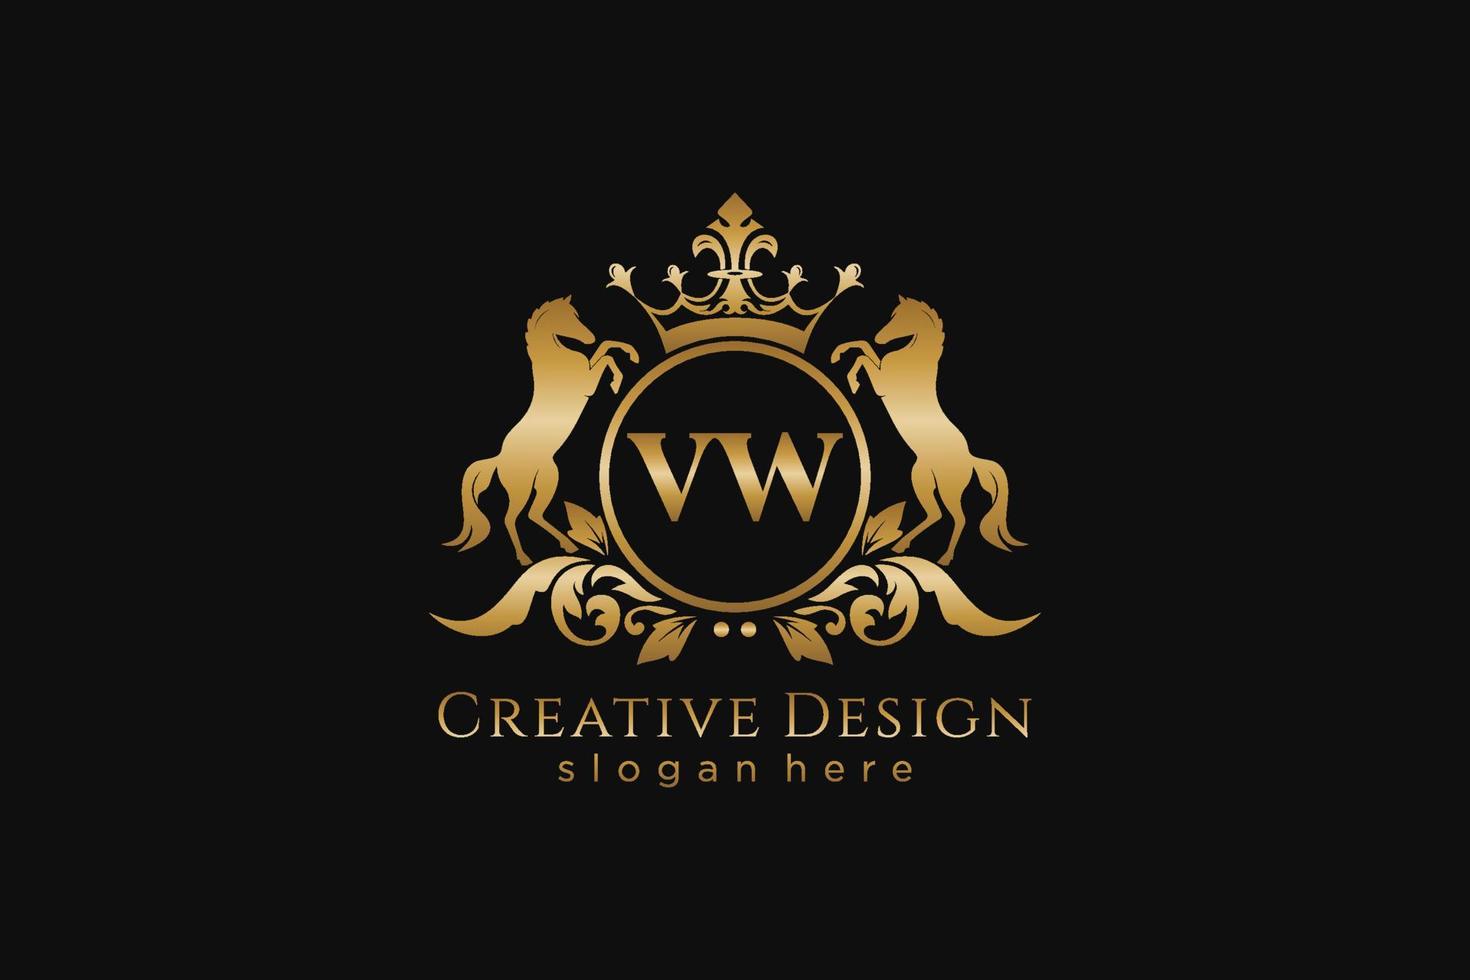 cresta dorada retro vw inicial con círculo y dos caballos, plantilla de insignia con pergaminos y corona real - perfecto para proyectos de marca de lujo vector